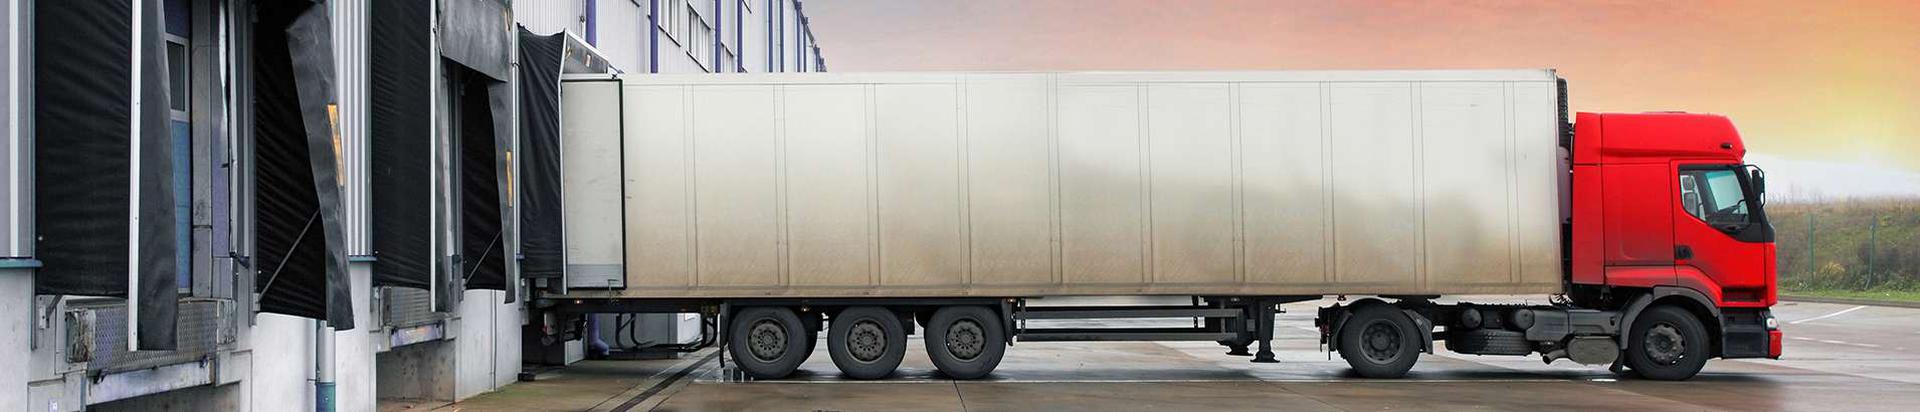 OÜ KT Logistika on siseekspediitor Eestis alates 2009 aastast. Meie põhitegevusalaks on ja jääb väikesaadetiste, täis- ja osakoormate vedu Eesti piires uksest ukseni. Lisaks pakume ladustamisteenust koos teiste laoteenustega Tartus. Olemasolevatele klientidele pakume ka kõiki teenuseid läbi oma pikaajaliste logistikapartnerite Euroopa Liidus. Meil töötavad oma ala hästi tundvad ja pikaajaliste kogemustega usaldusväärsed töötajad. Väikesaadetiste ja osakoormate veol koormame auto mitme